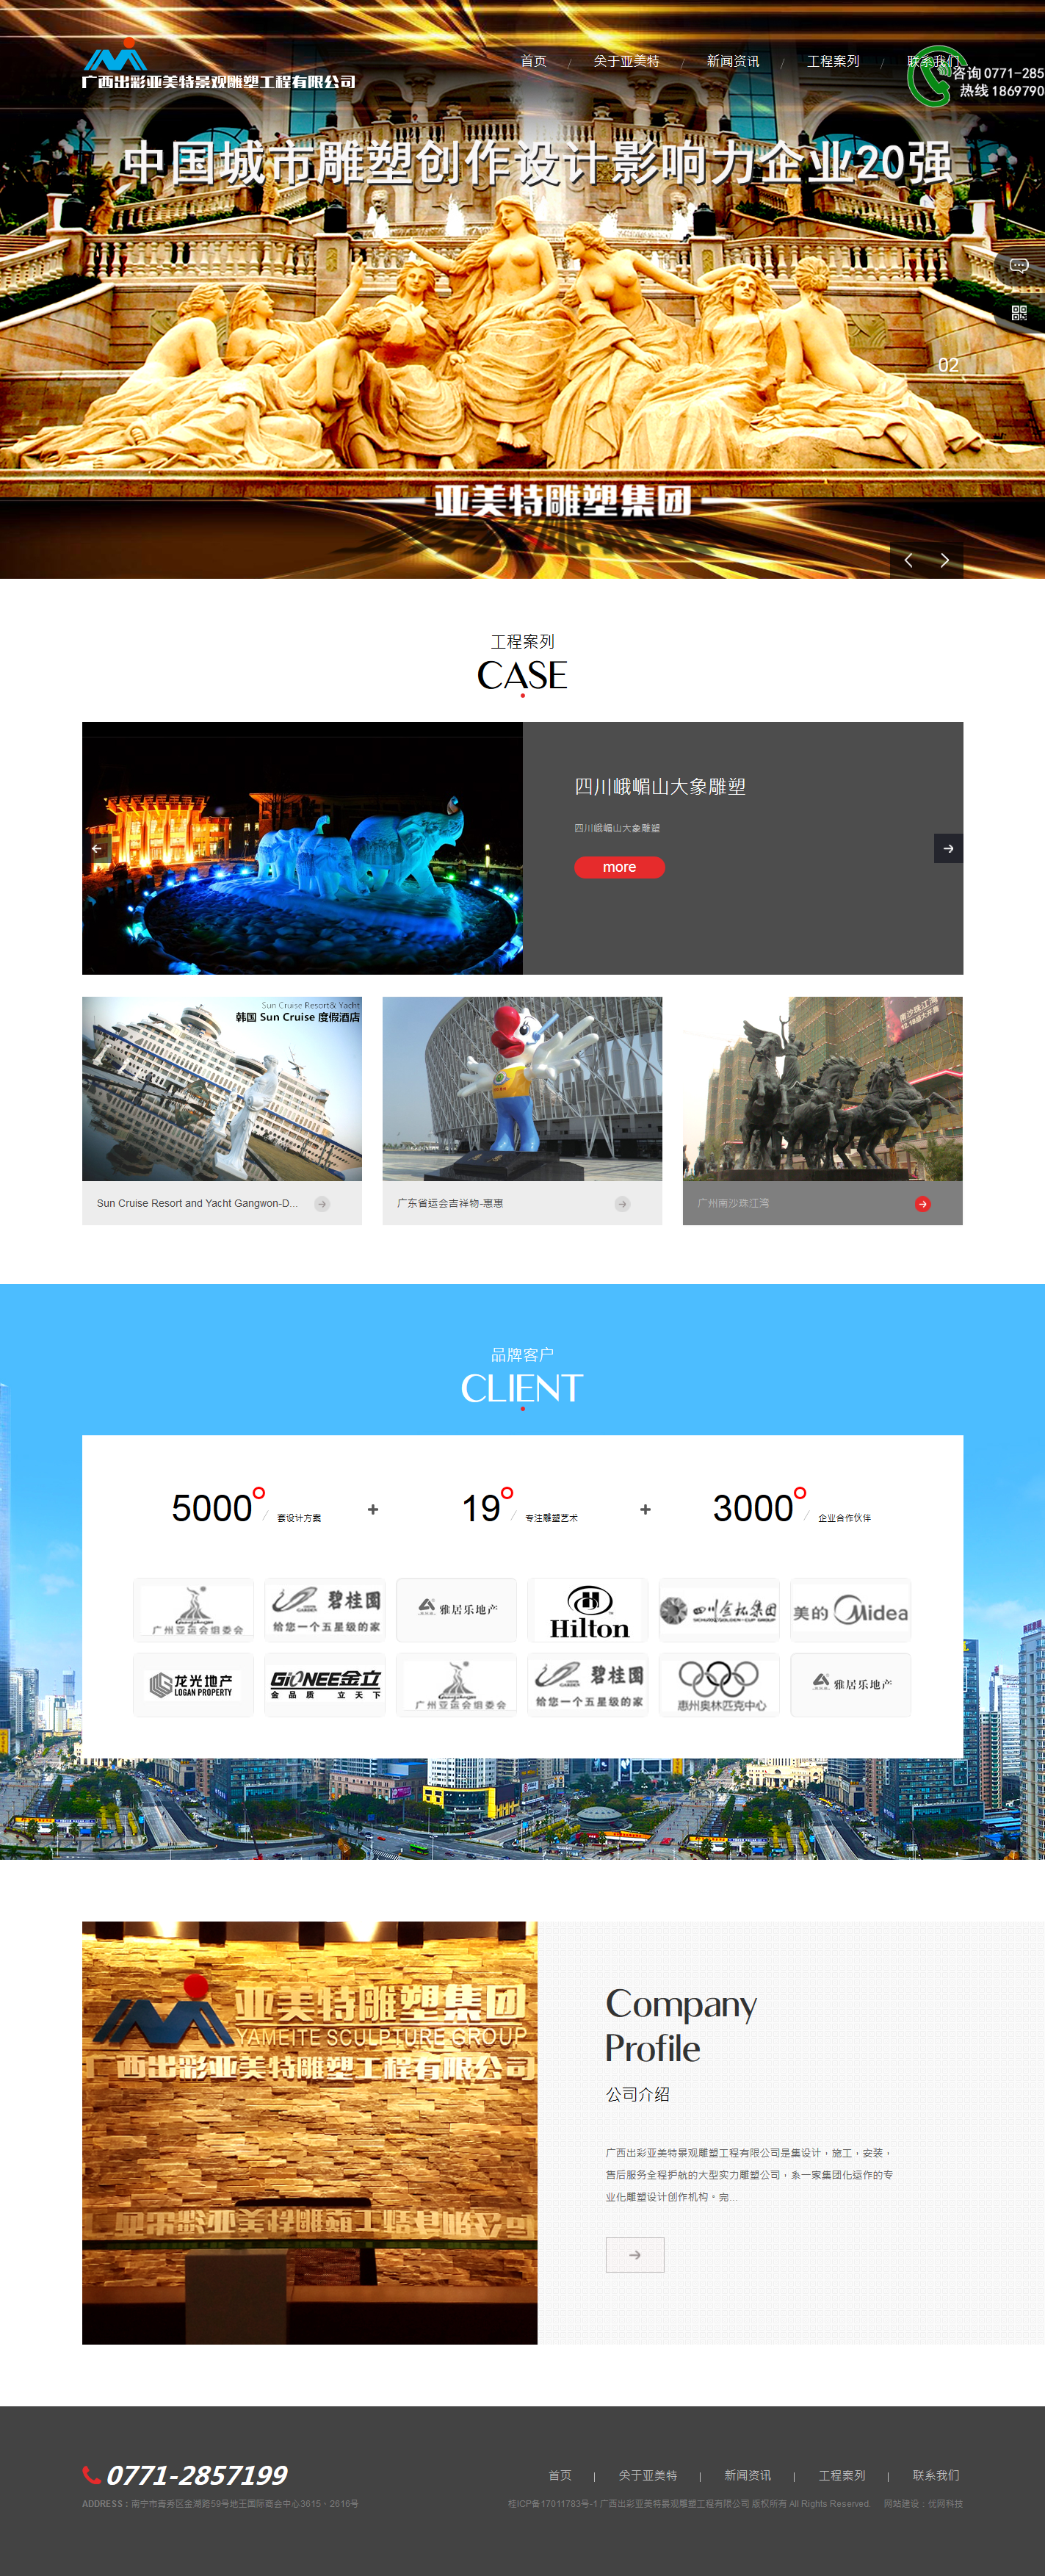 广西出彩亚美特景观雕塑工程有限公司官方网站建设开通上线！